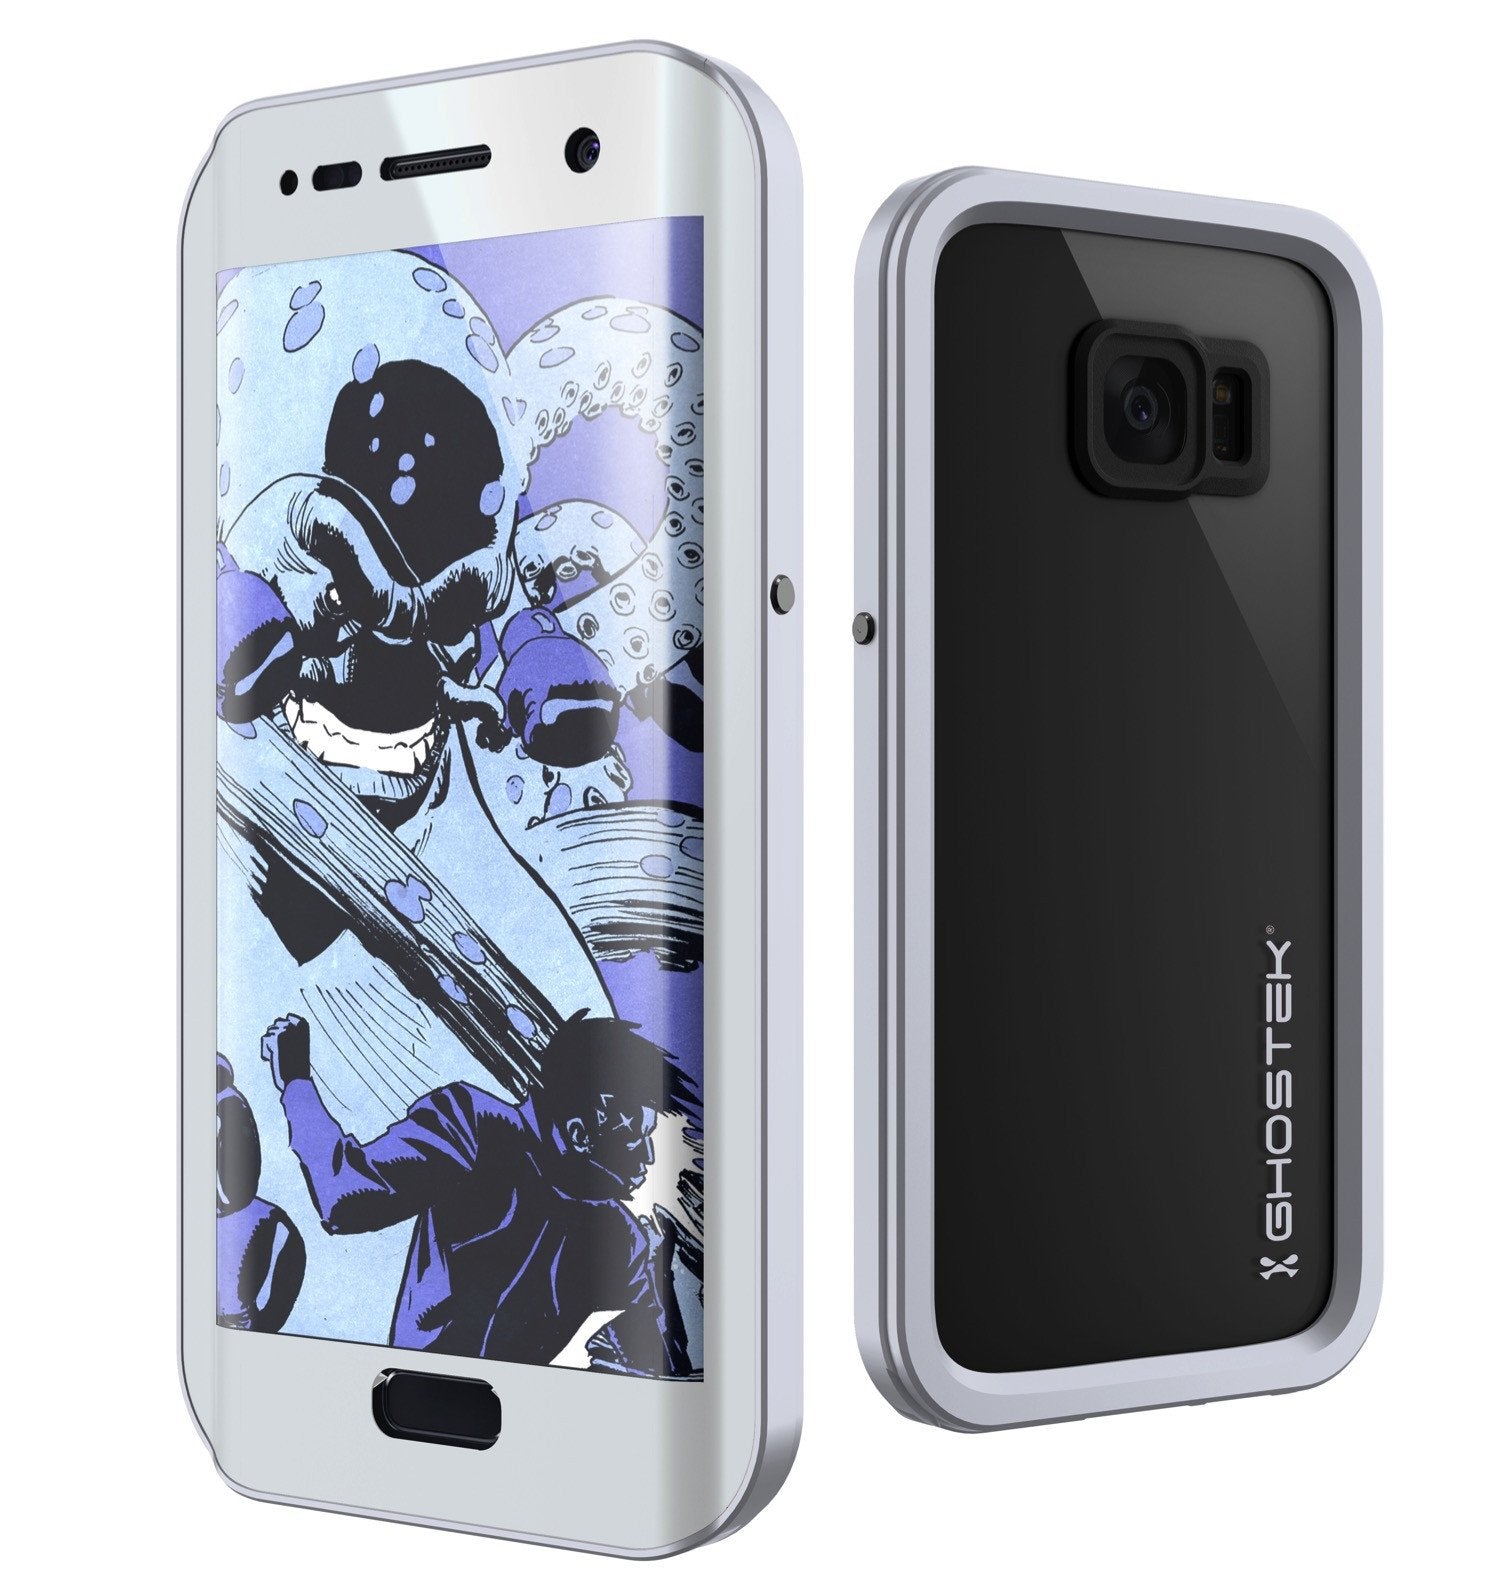 Galaxy S7 EDGE Waterproof Case, Ghostek Atomic 2.0 Silver Shock/Dirt/Snow Proof | Lifetime Warranty